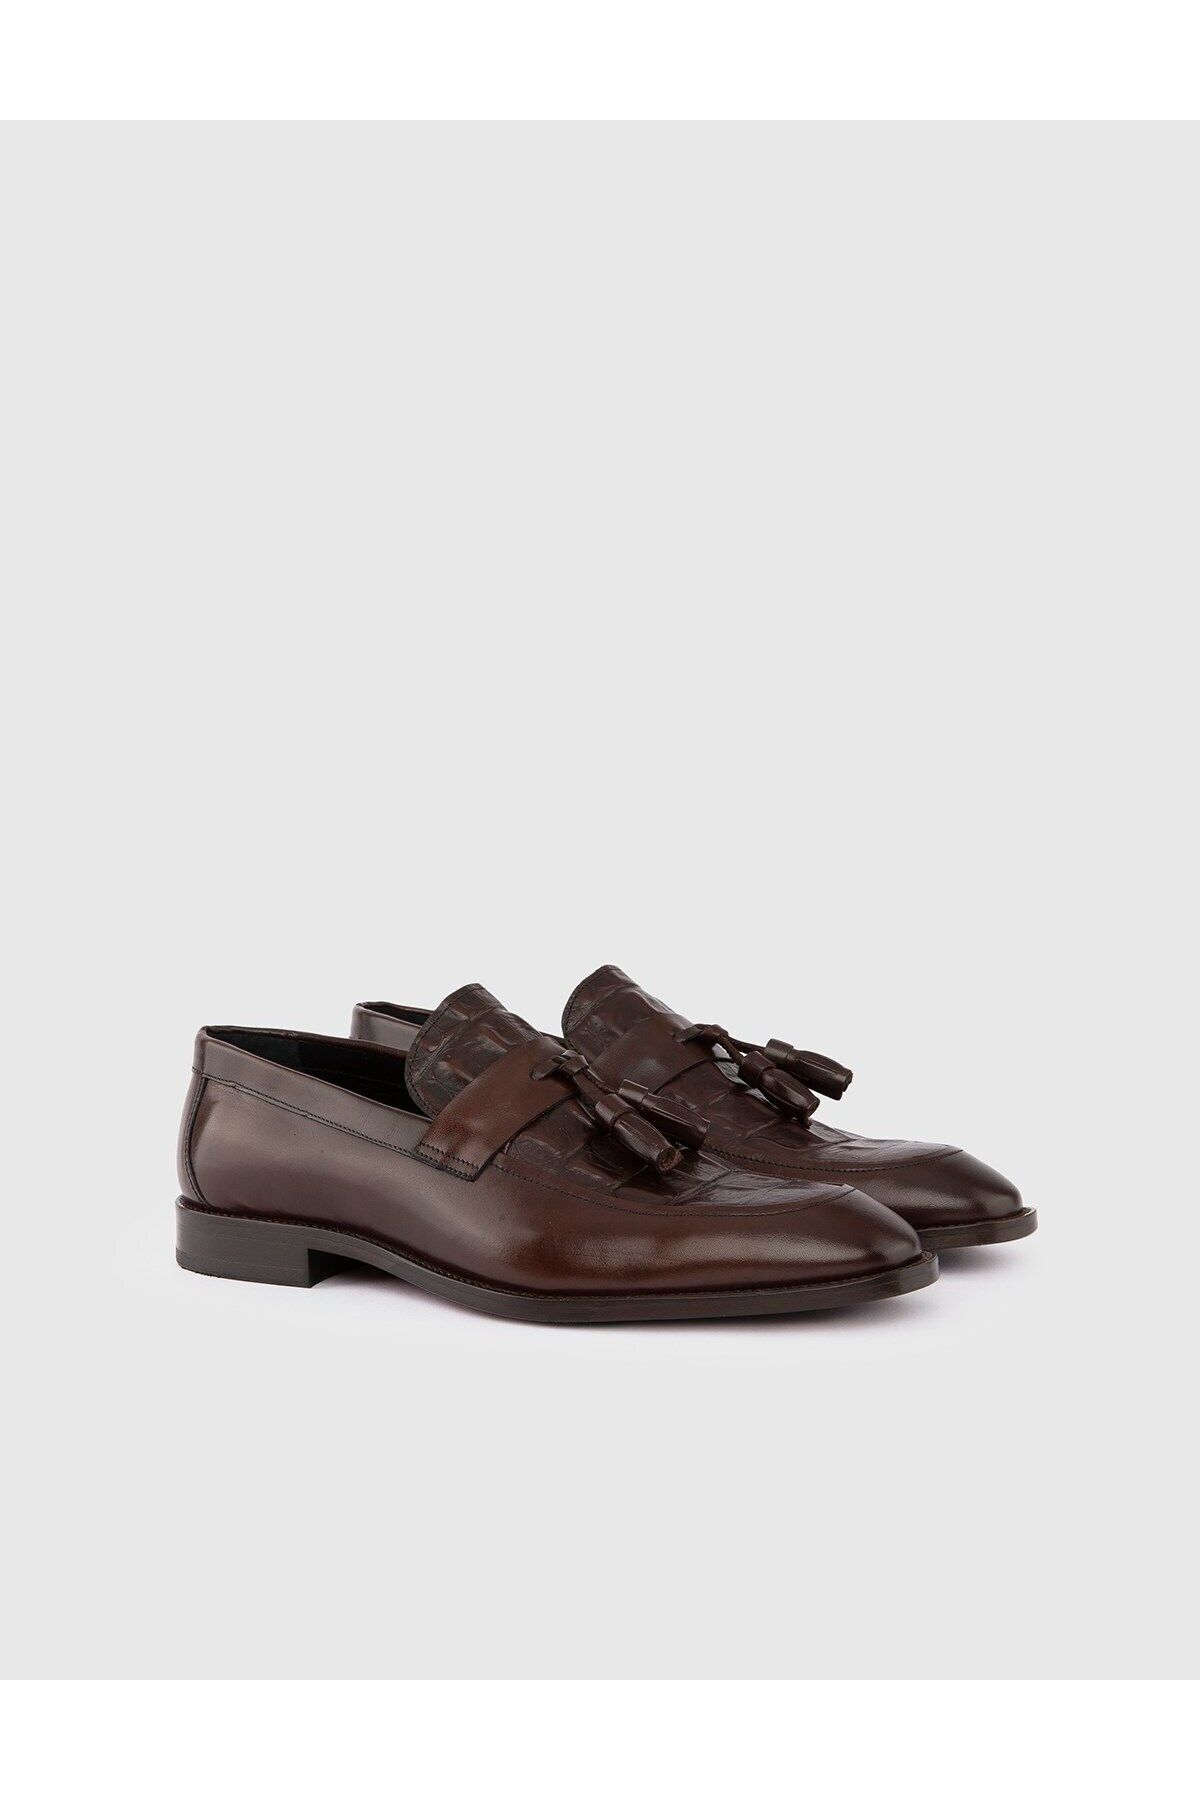 İlvi Bestla Hakiki Antik Deri Timsah Baskı Erkek Kahverengi Klasik Ayakkabı